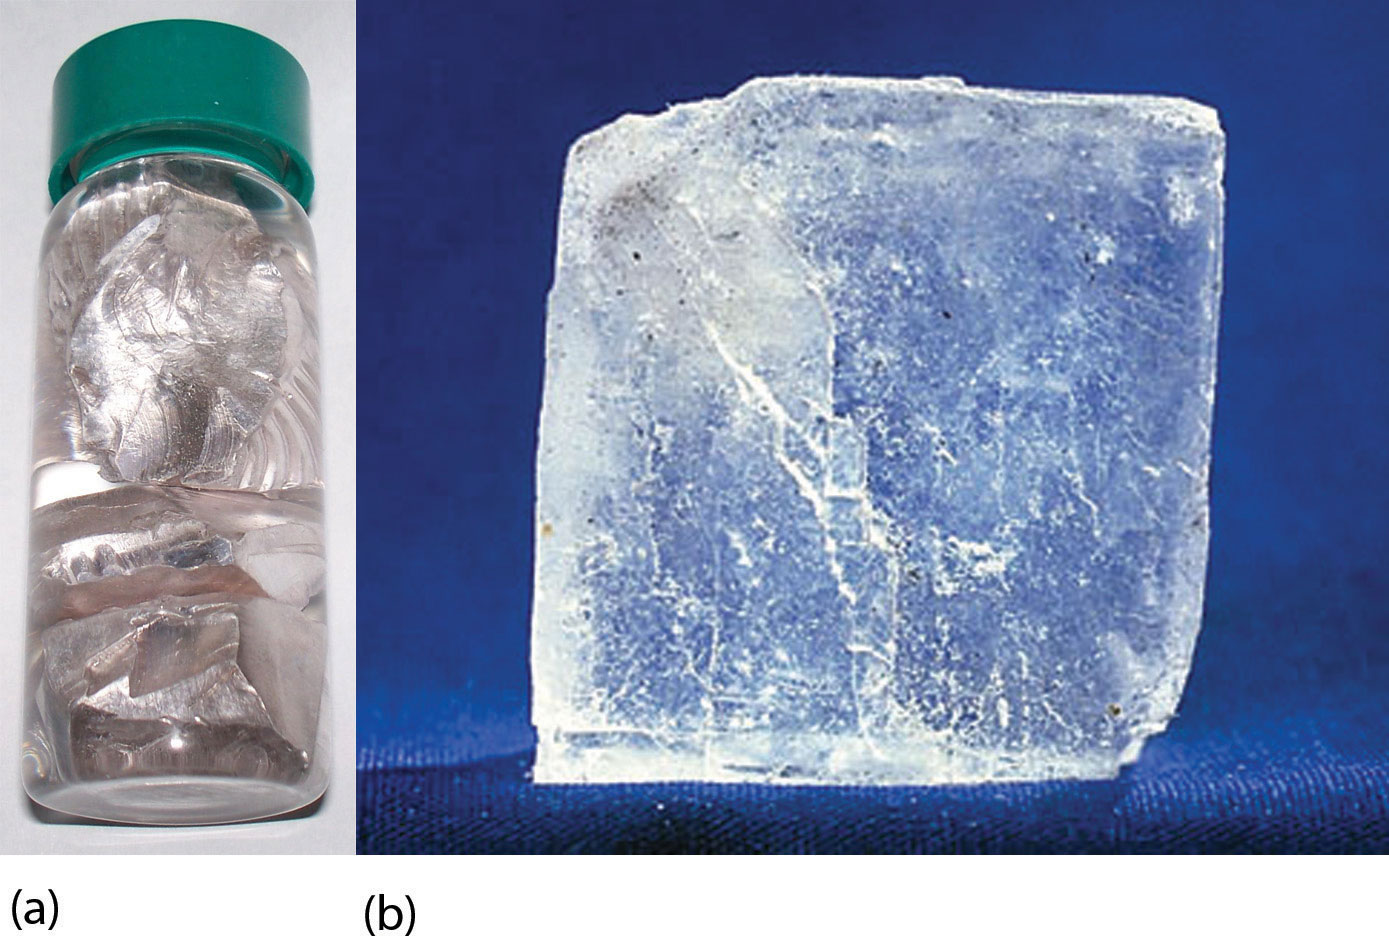 El metal de sodio se muestra en un pequeño recipiente de vidrio con tapa verde. Al lado de la botella, se muestra un cristal de sal magnificado.